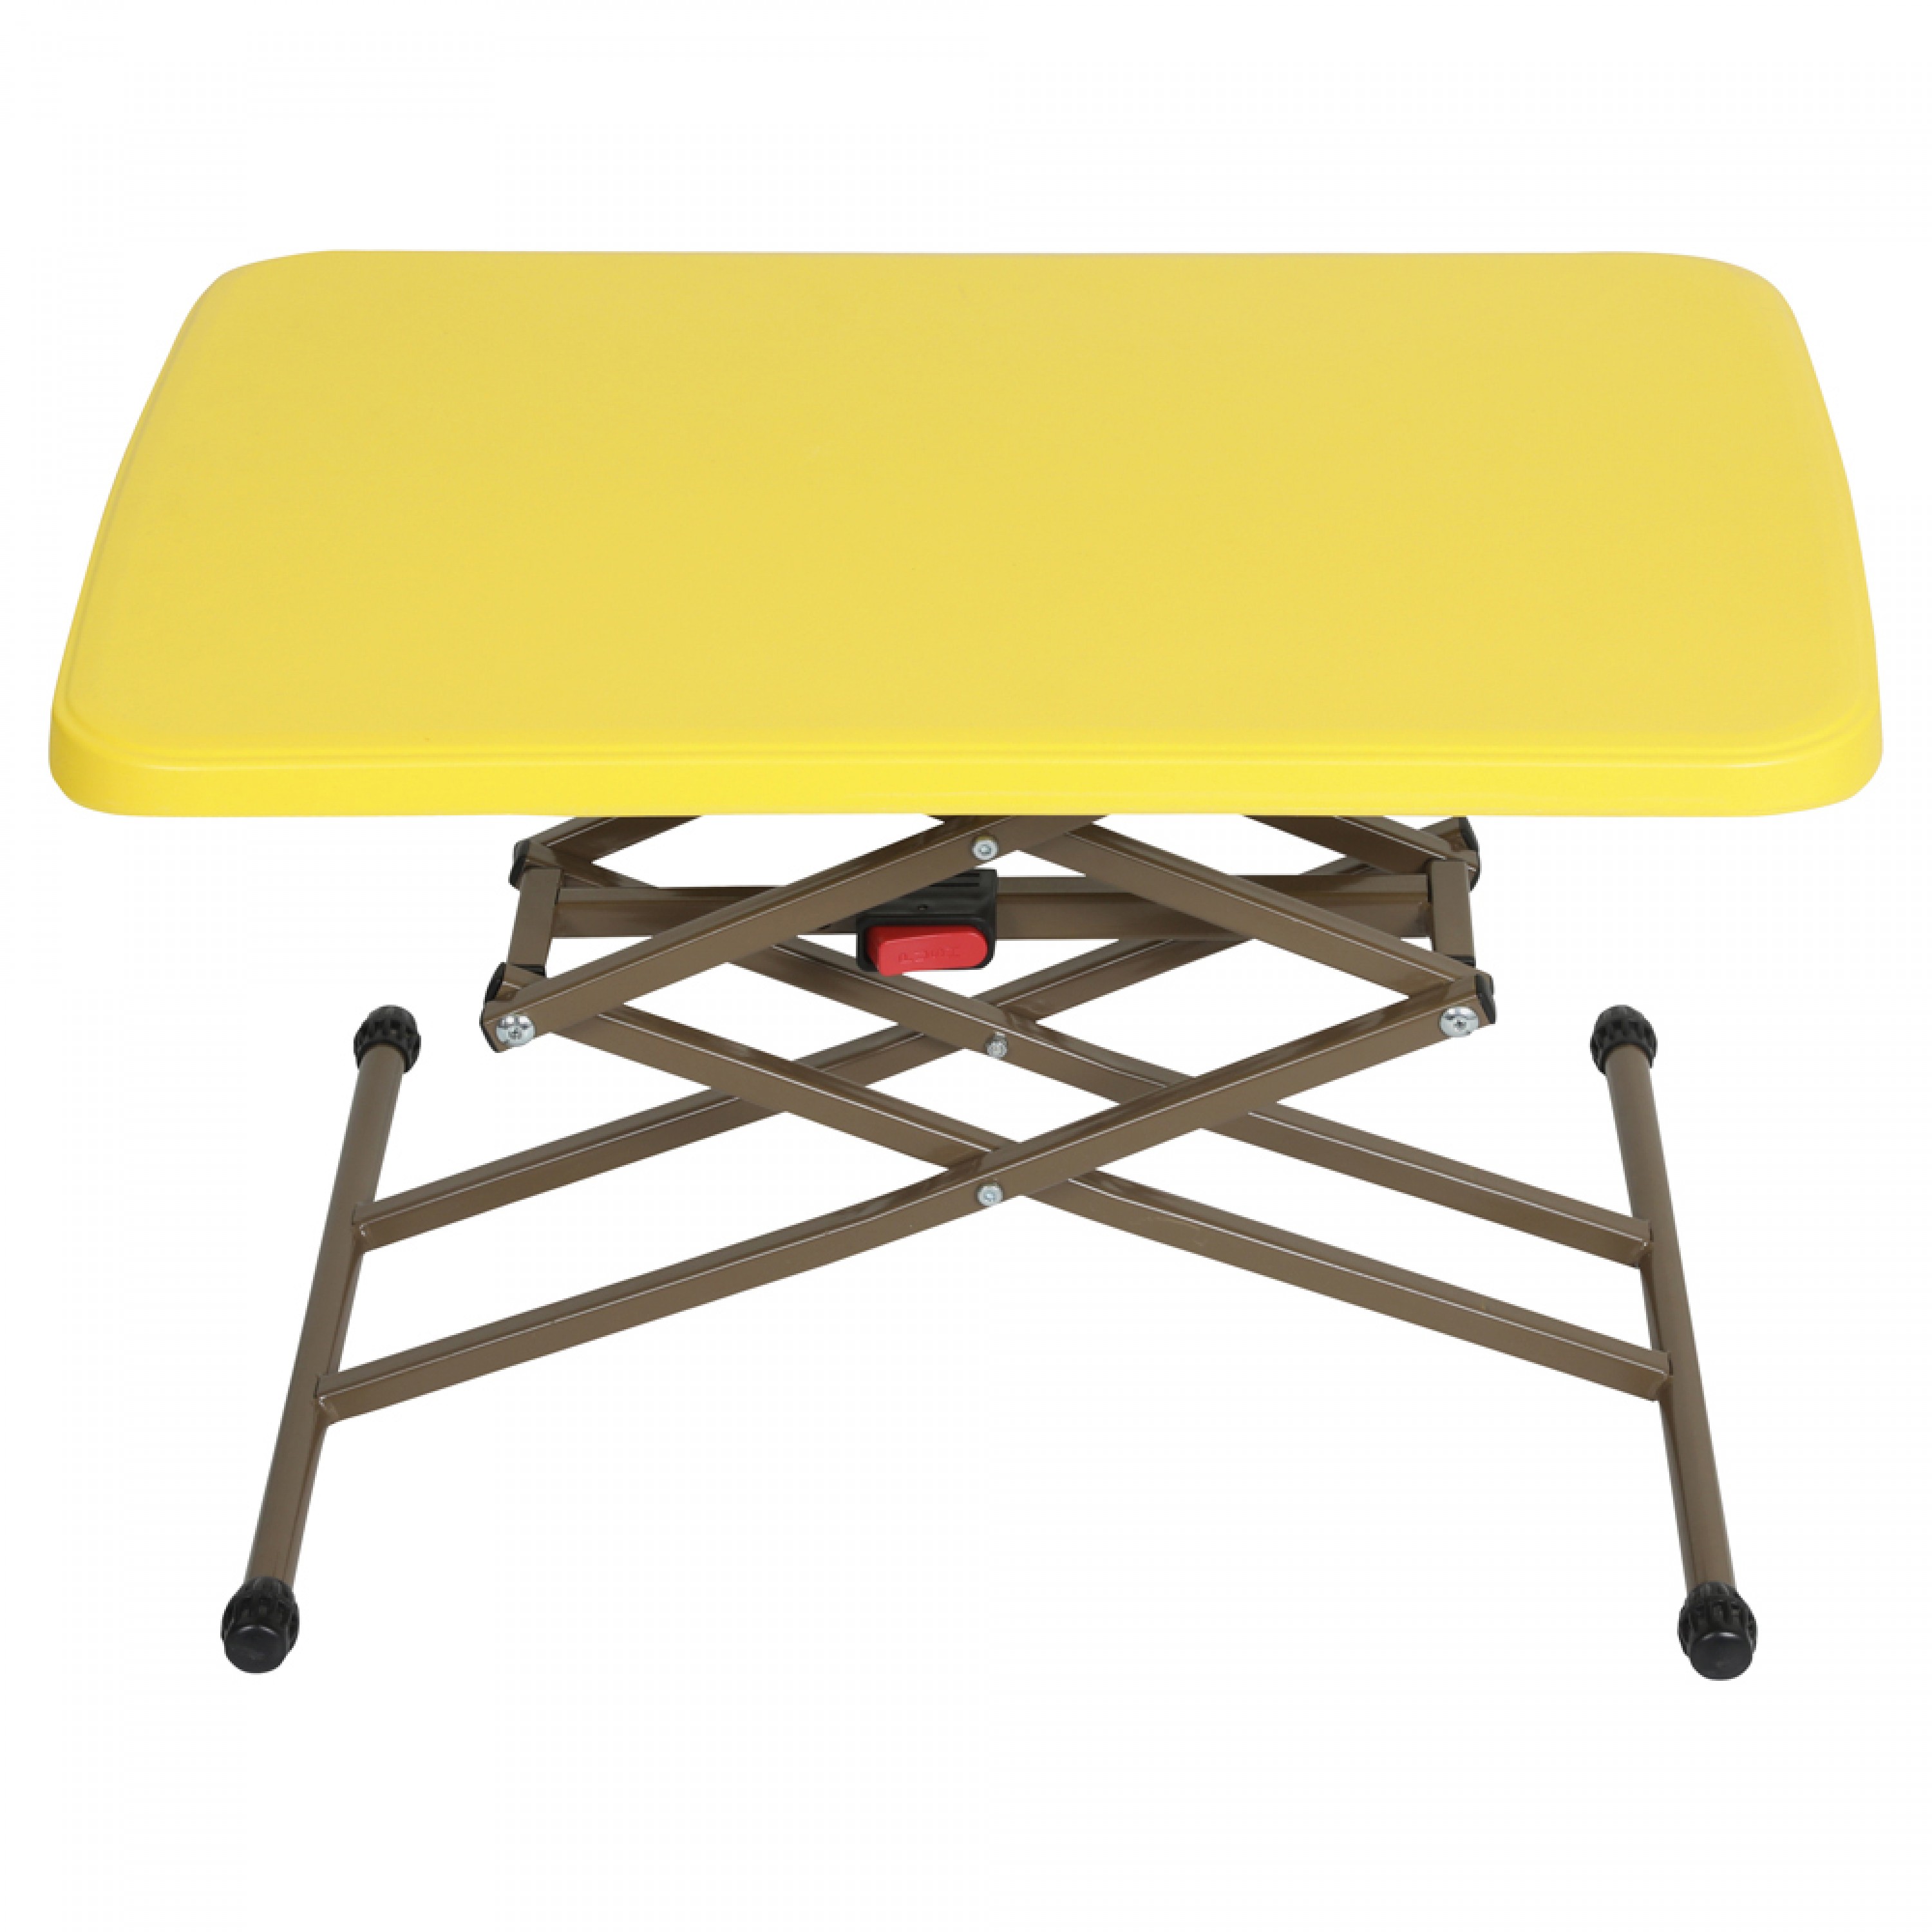 دي بي تي، طاولة الومنيوم قابلة للتعديل، طاولة للرحلات والحدائق المنزلية قابلة للطي، 44.5*62.5سم